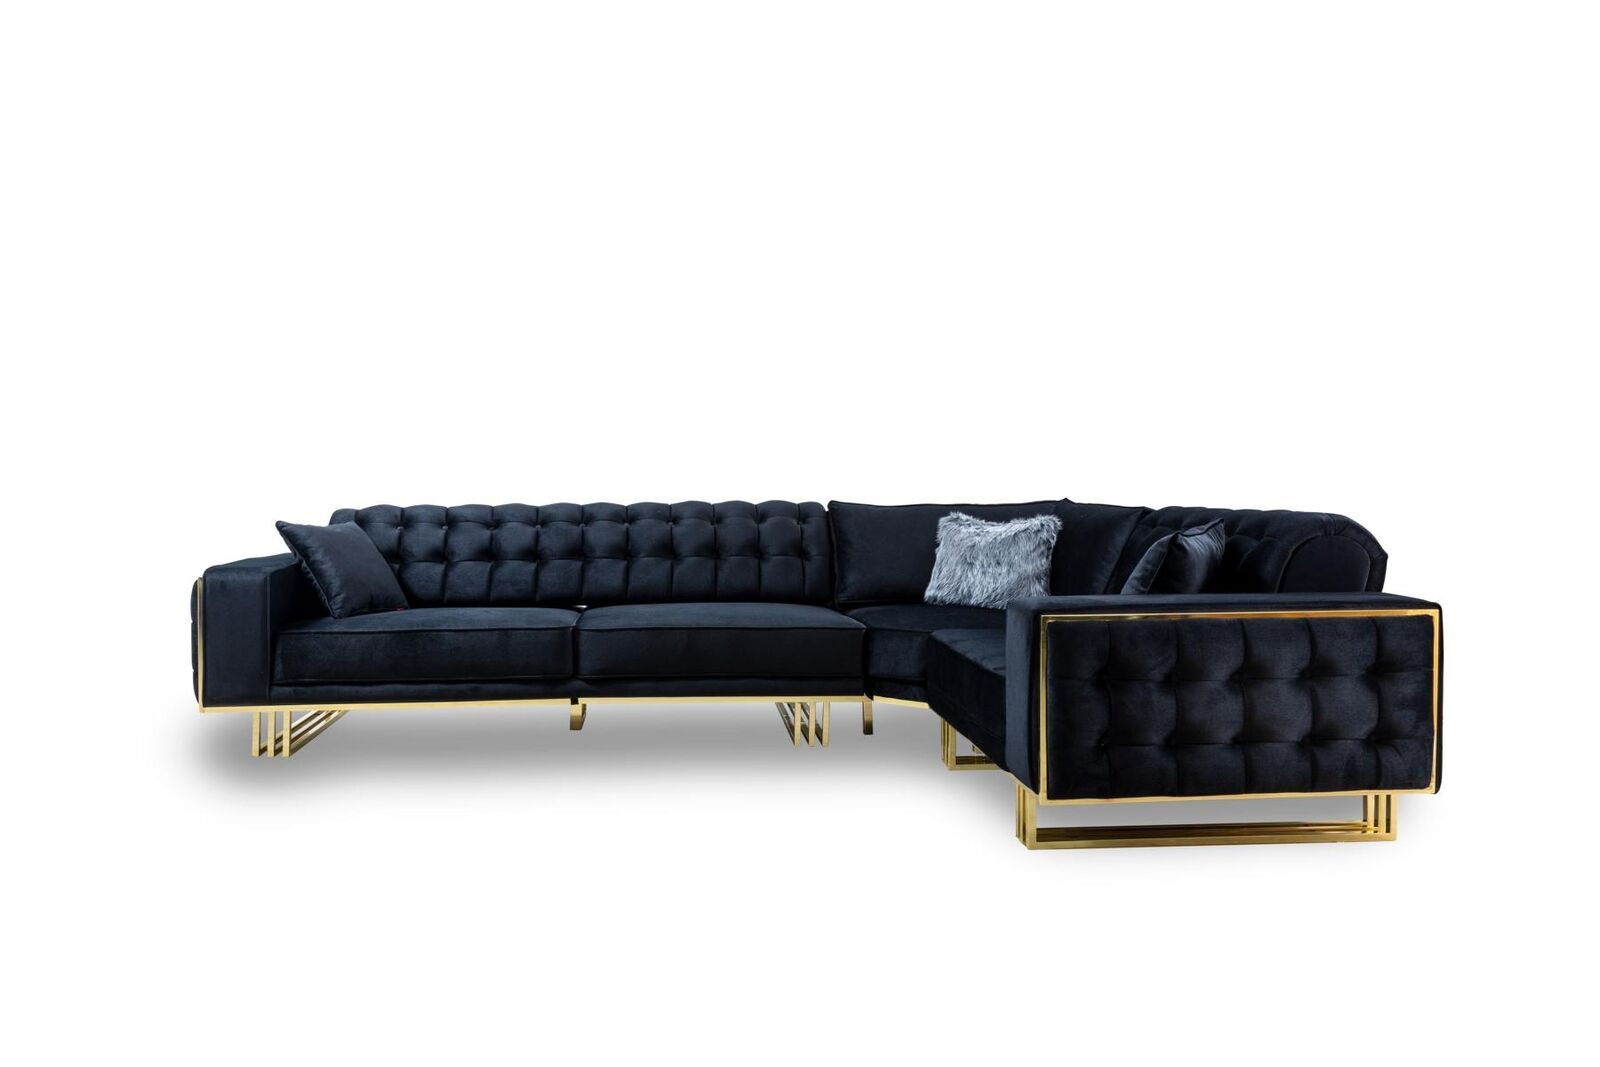 Exclusive corner sofa modern L-shape designer style furniture living room corner set